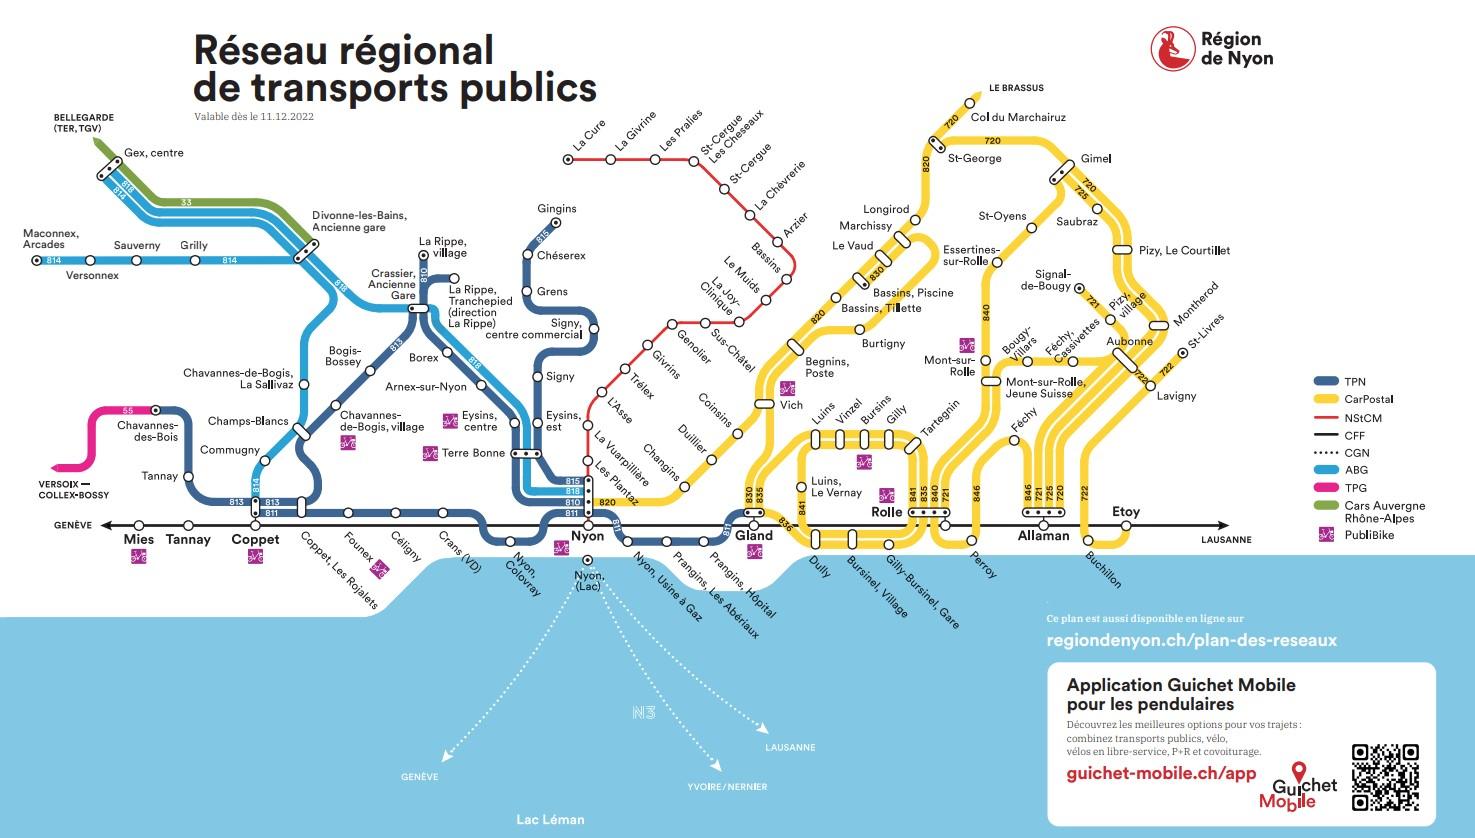 Zone carte Explore Réseau regional de transports publics -Région de Nyon